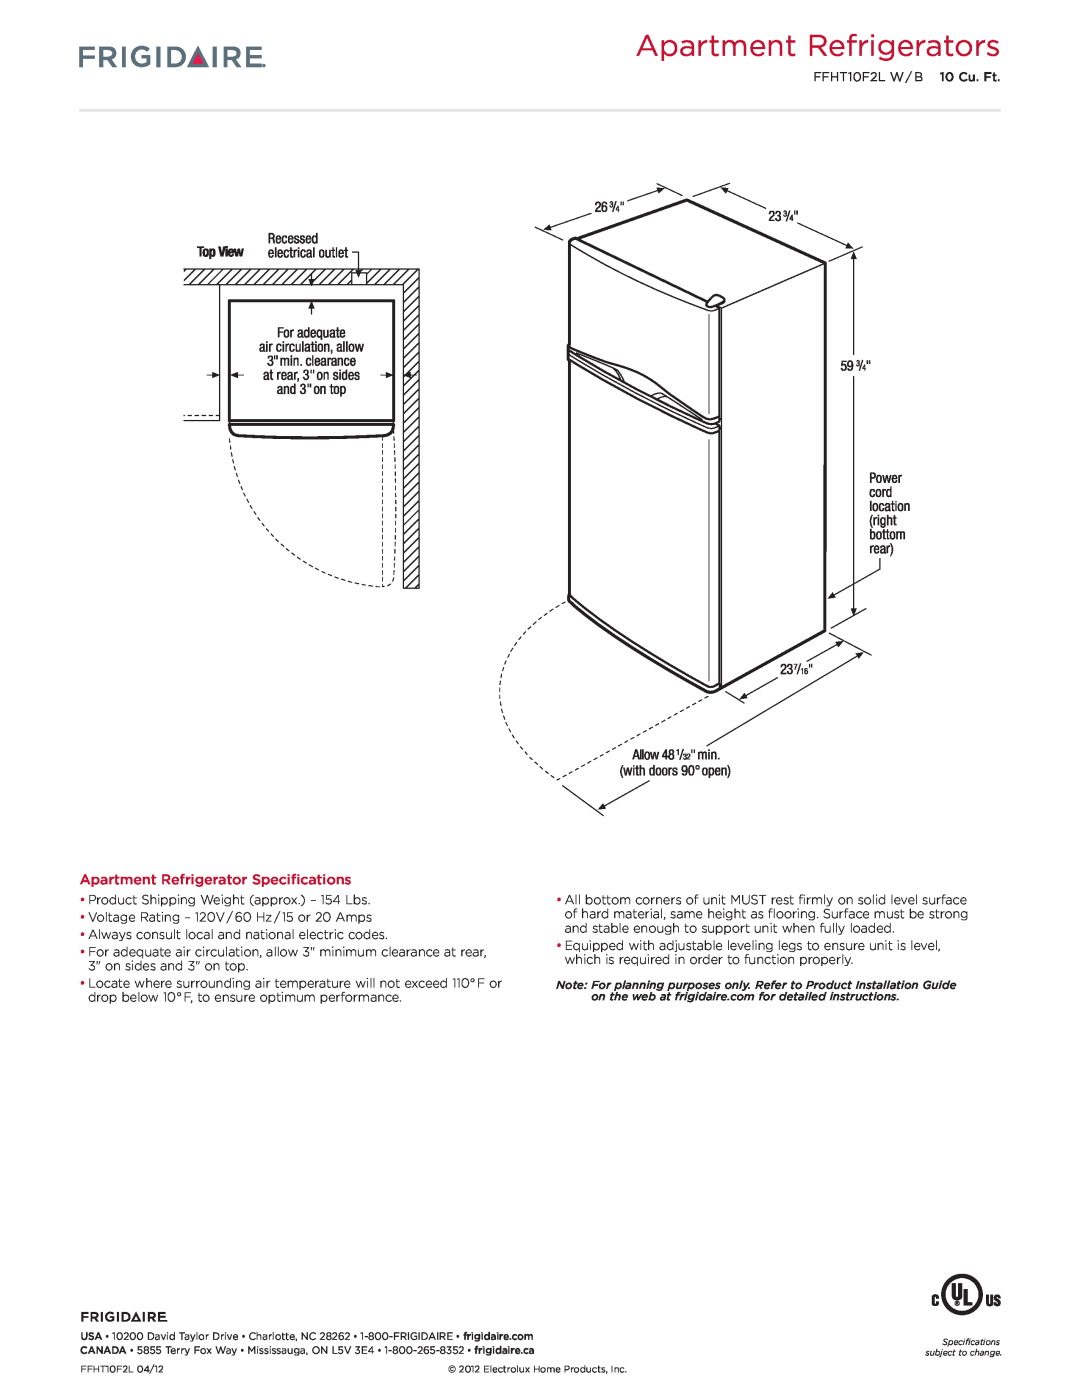 Frigidaire FFHT10F2LB dimensions Apartment Refrigerators, Apartment Refrigerator Specifications 